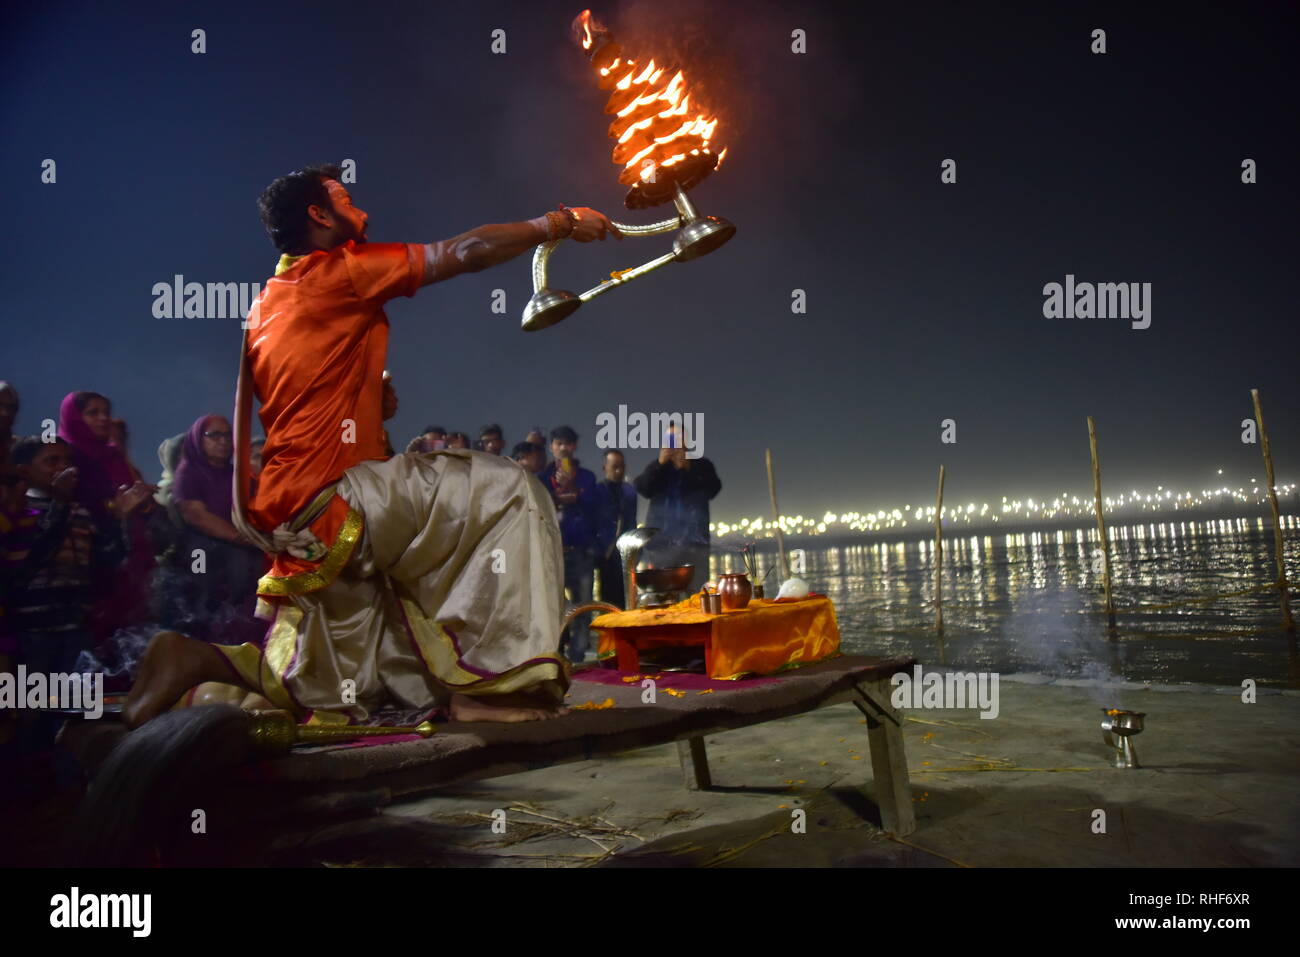 Pandit gesehen tun Ganga Aarti während der Wallfahrt. Kumbh Mela, einer der größten Gemeinde des Menschen auf der Erde. Lacs von Menschen werden erwartet am Tag der zweiten Shahi Snan am 4. Februar und Arrangements sind entsprechend in Prayagraj gemacht. Stockfoto